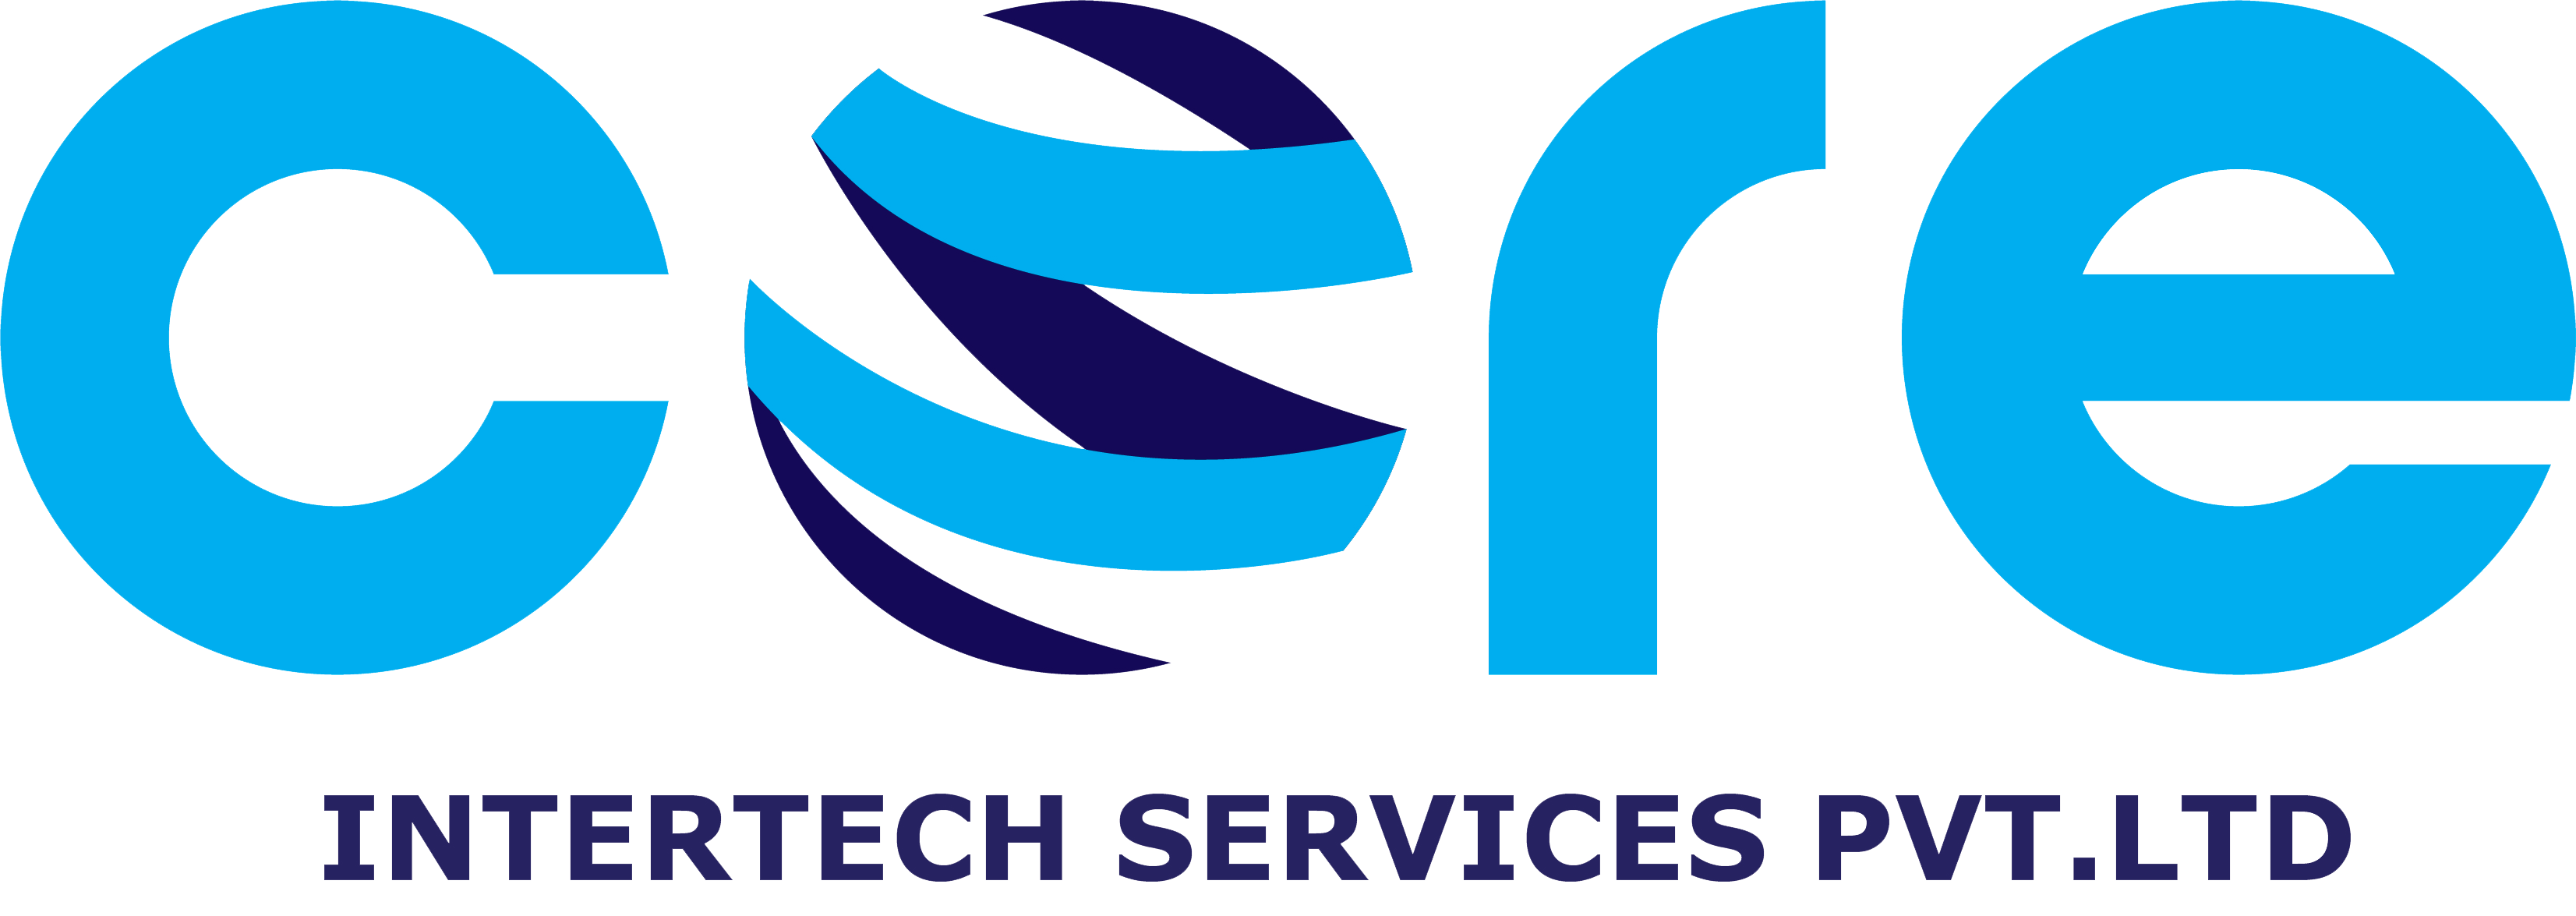 CORE Intertech Services Pvt. Ltd.